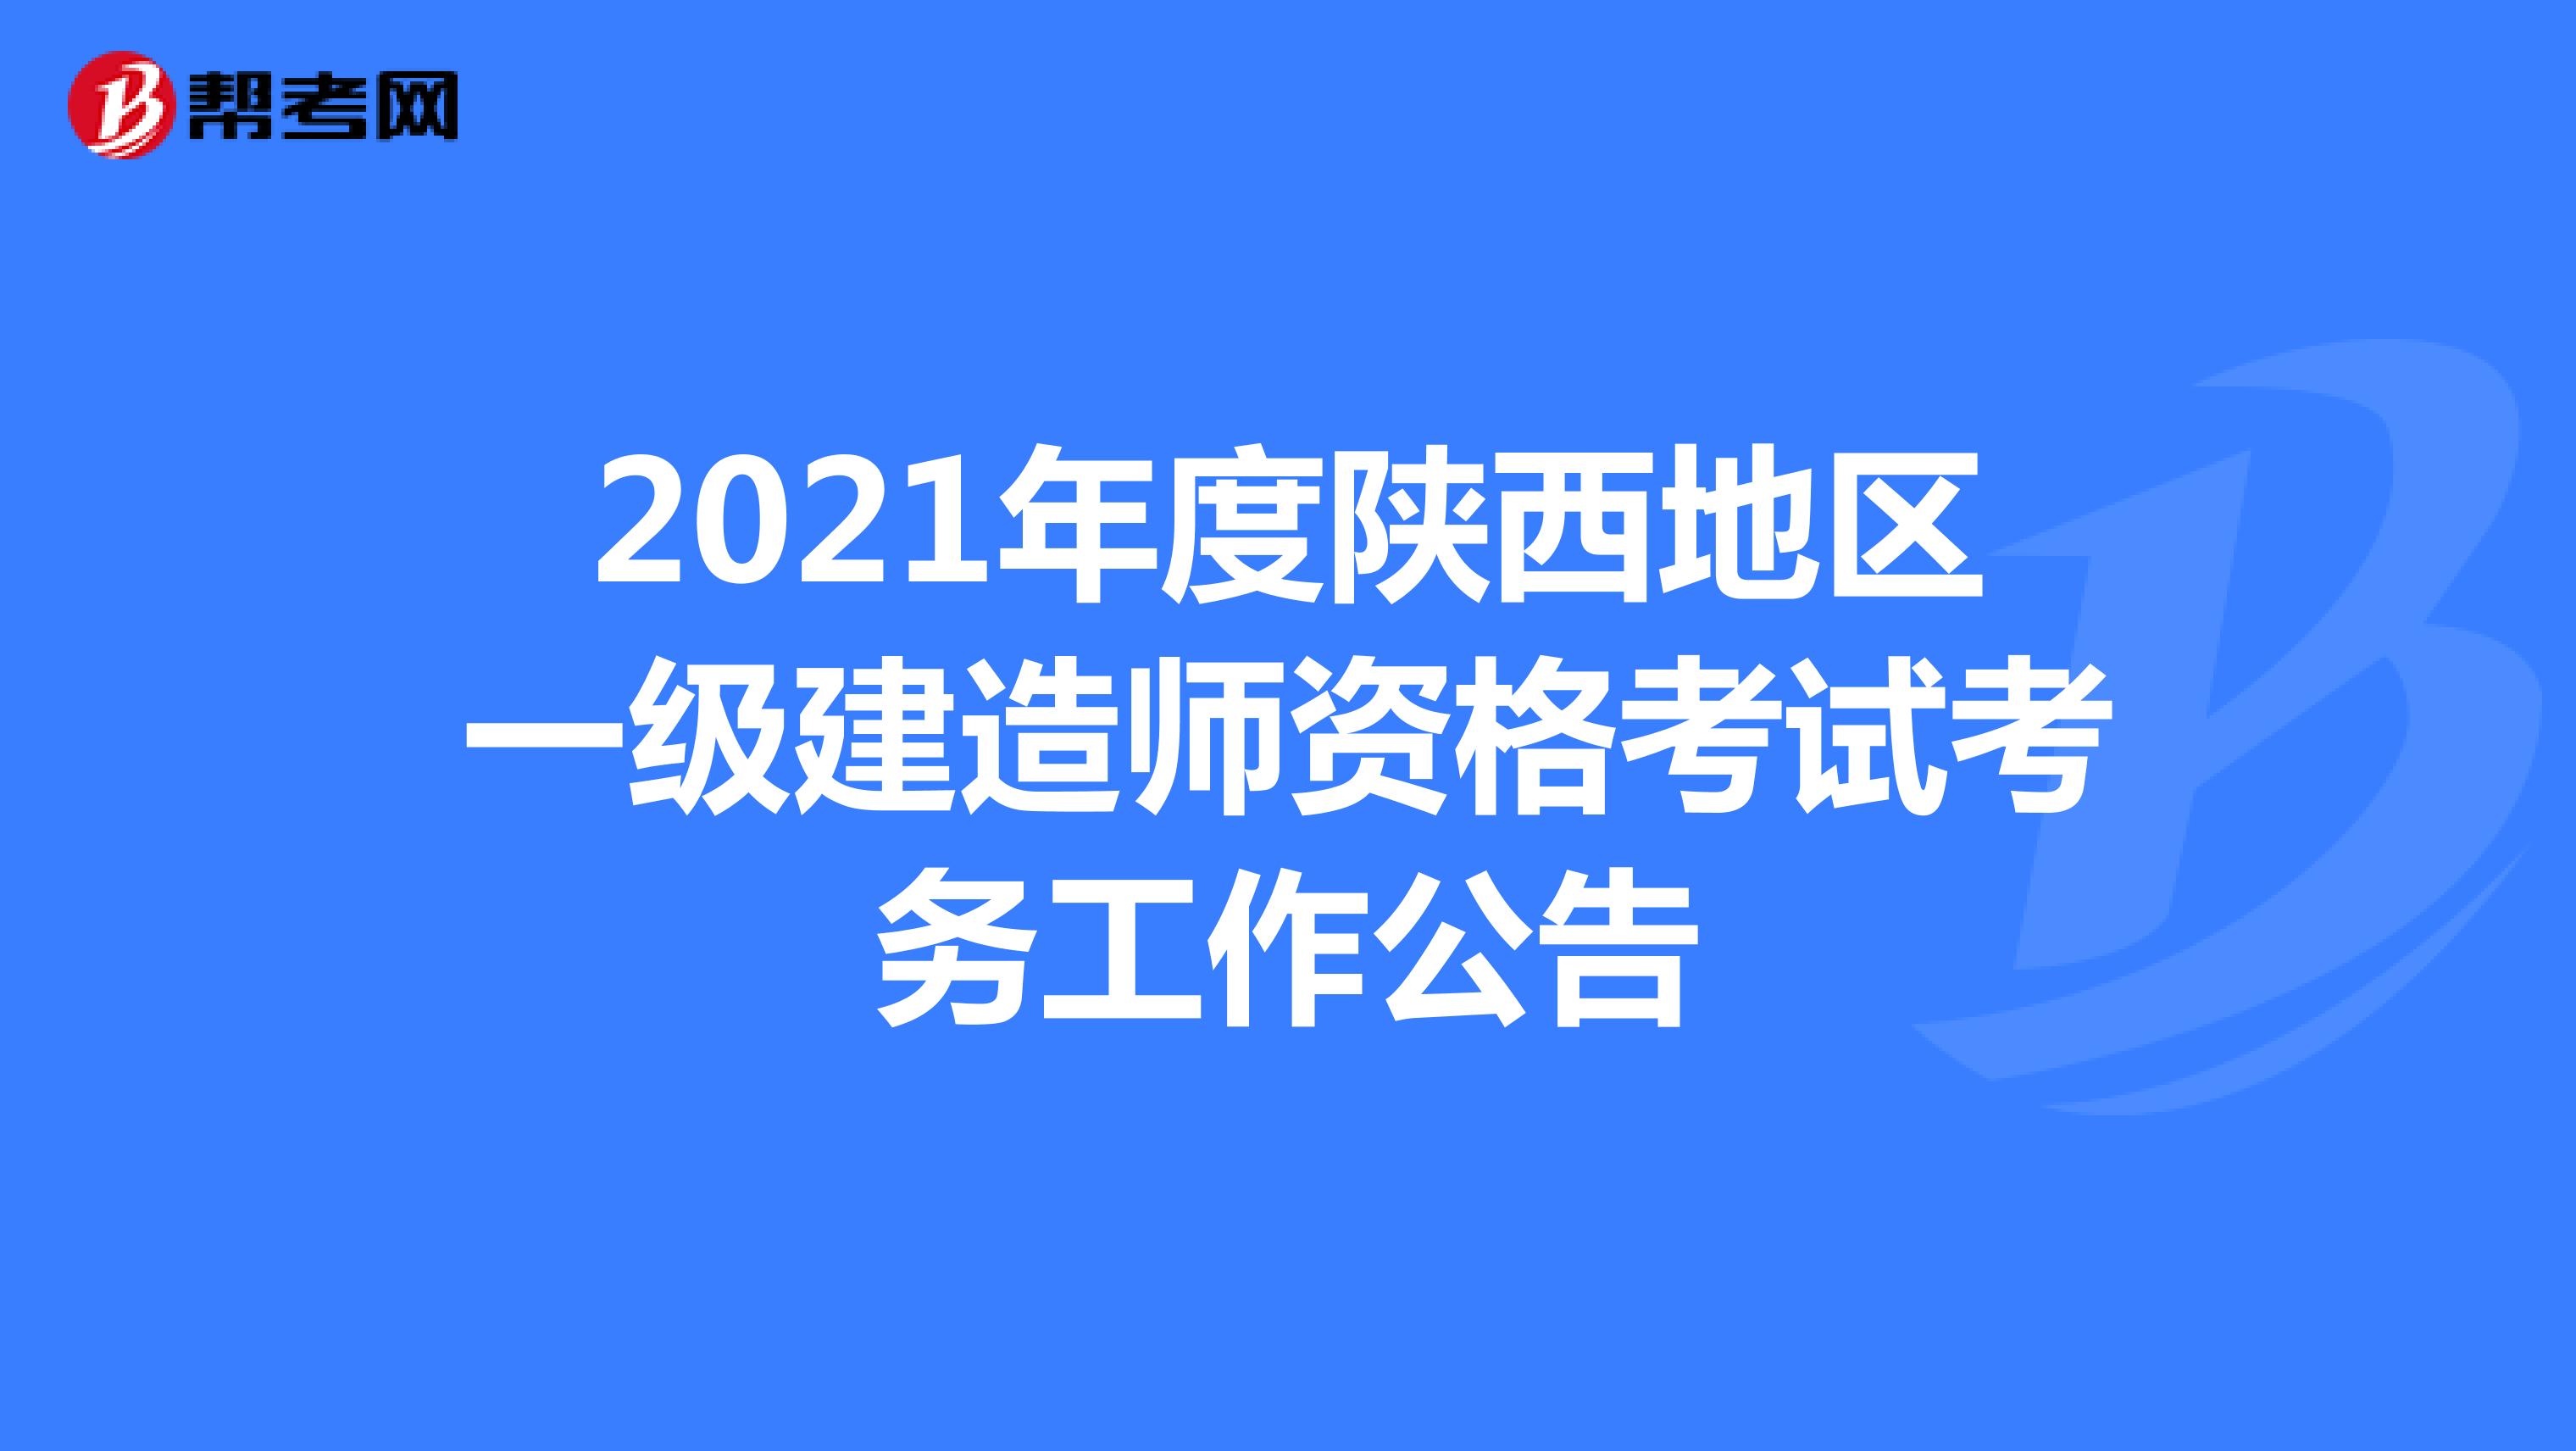 2021年度陕西地区一级建造师资格考试考务工作公告